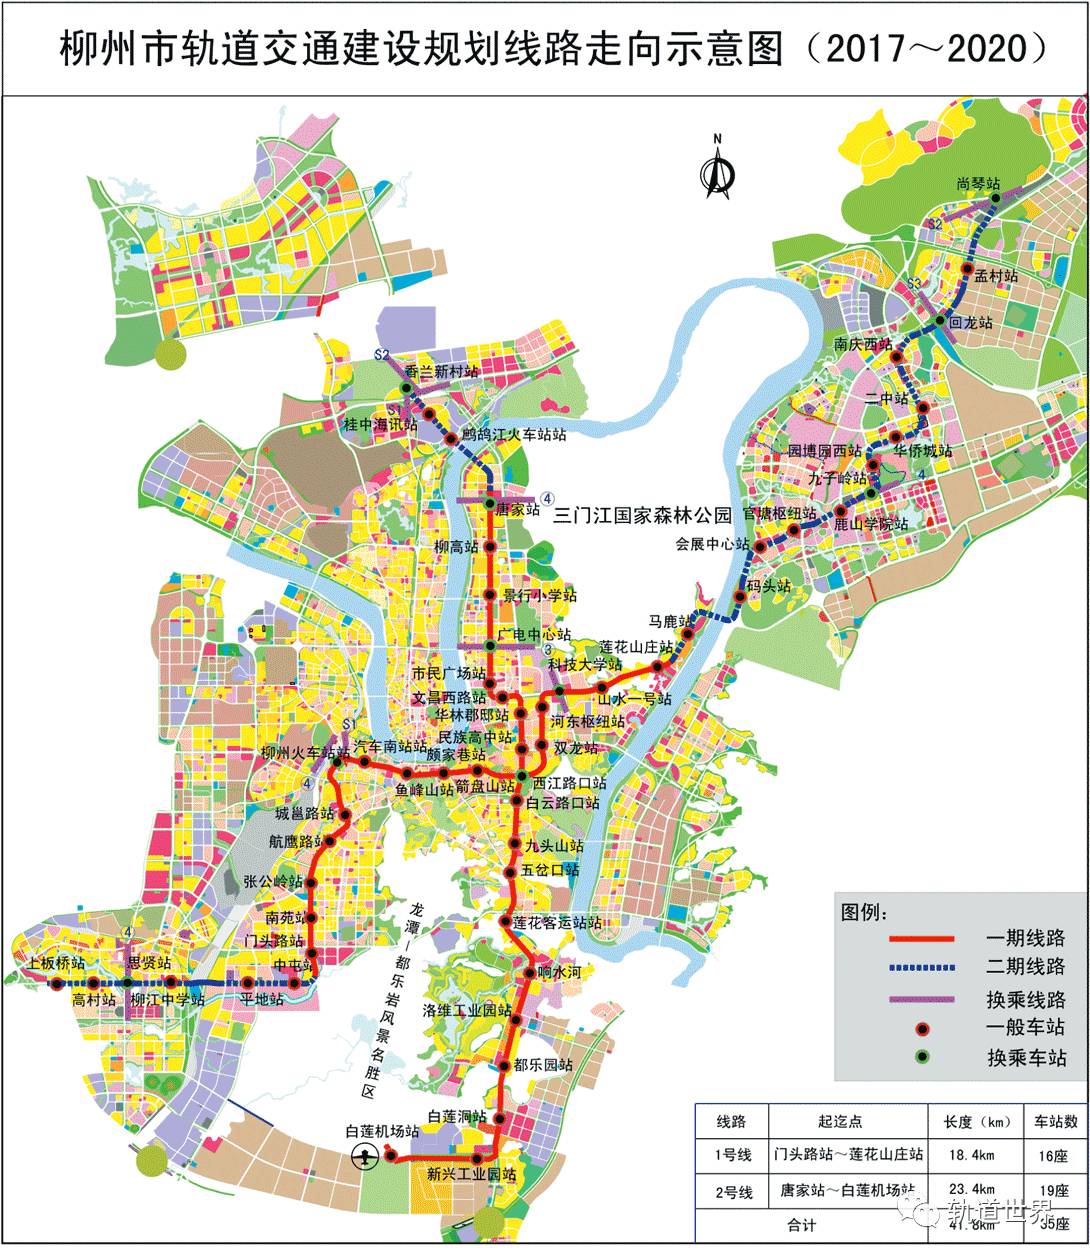 柳州市轨道交通建设规划线路走向示意图